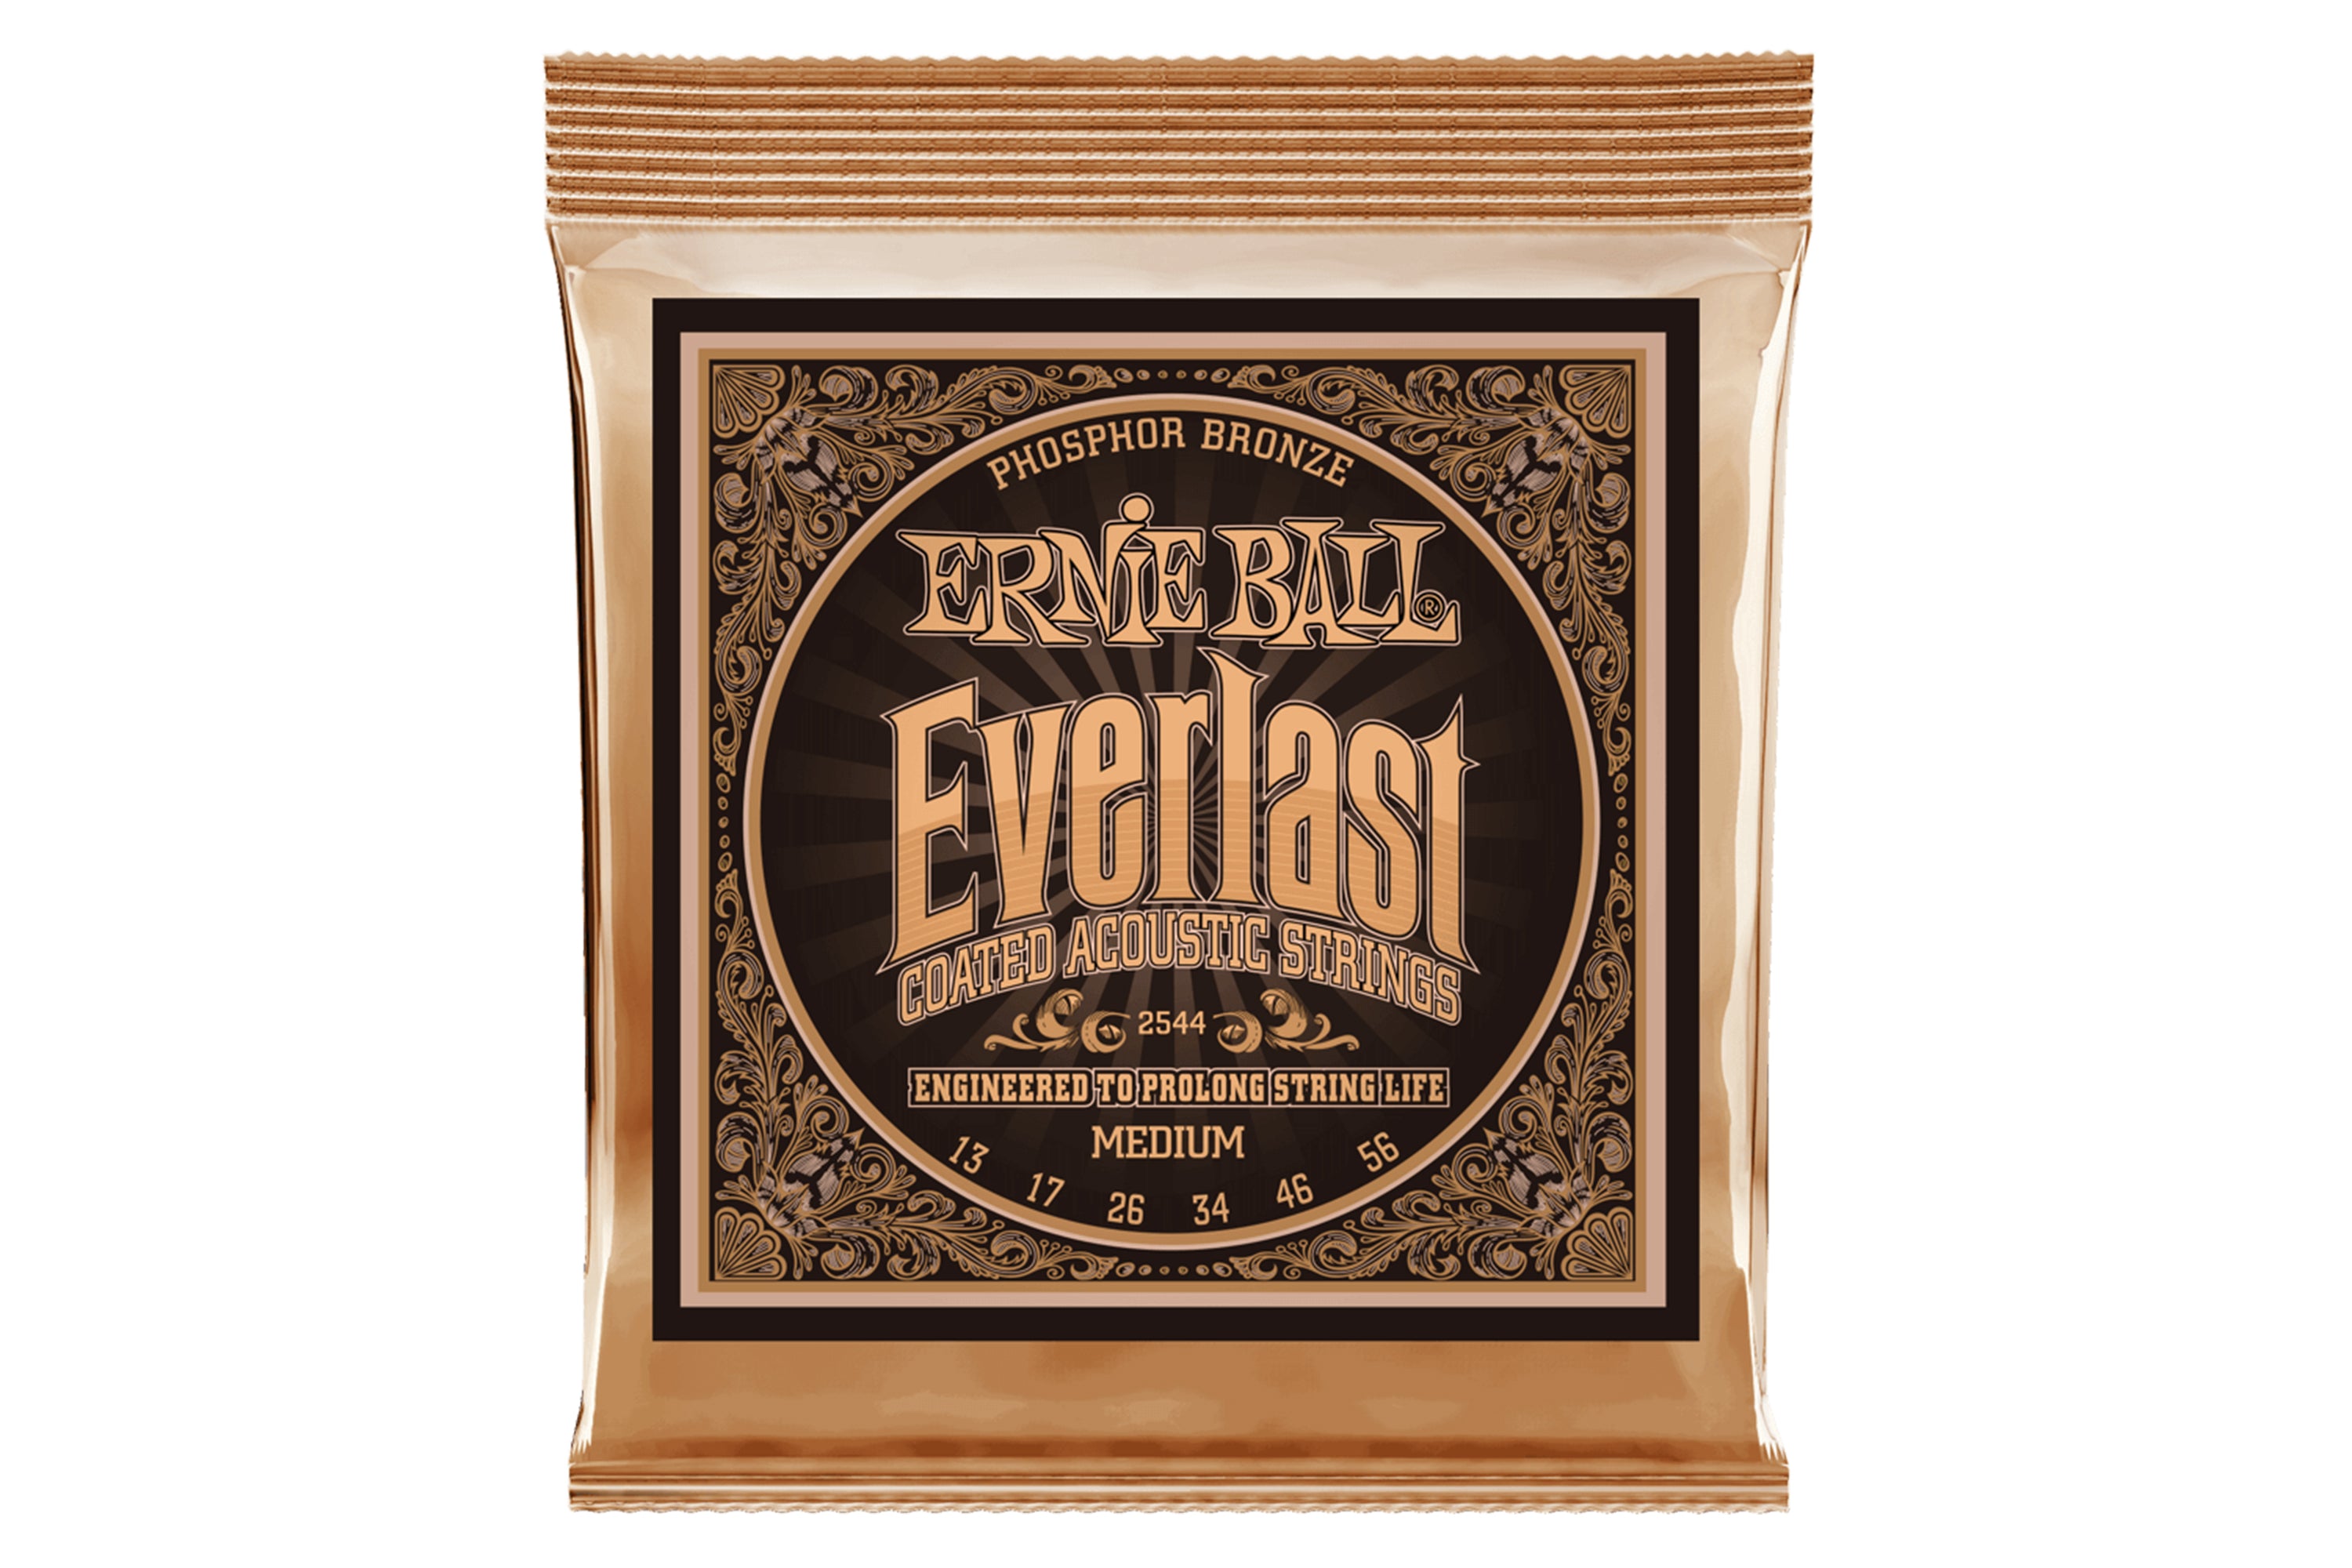 Ernie Ball Everlast Medium Coated Phosphor Bronze Acoustic Guitar Strings - 13-56 GAUGE